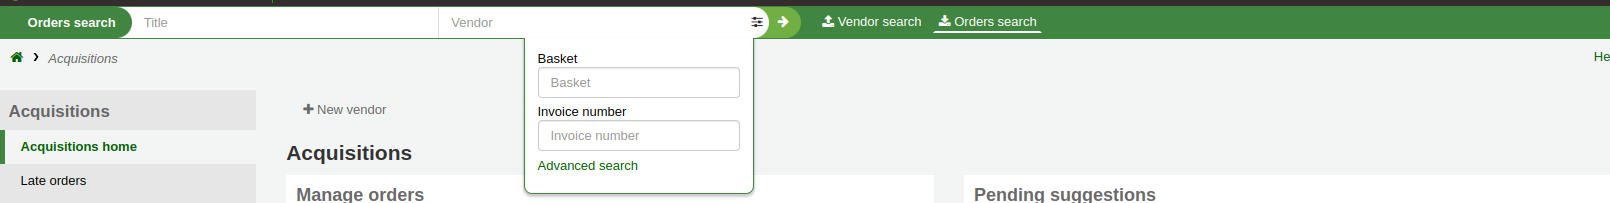 頁面頂端的搜尋欄在採訪模組中有兩個選項，供應商搜尋和訂單搜尋，這顯示了訂單搜尋選項，已展開